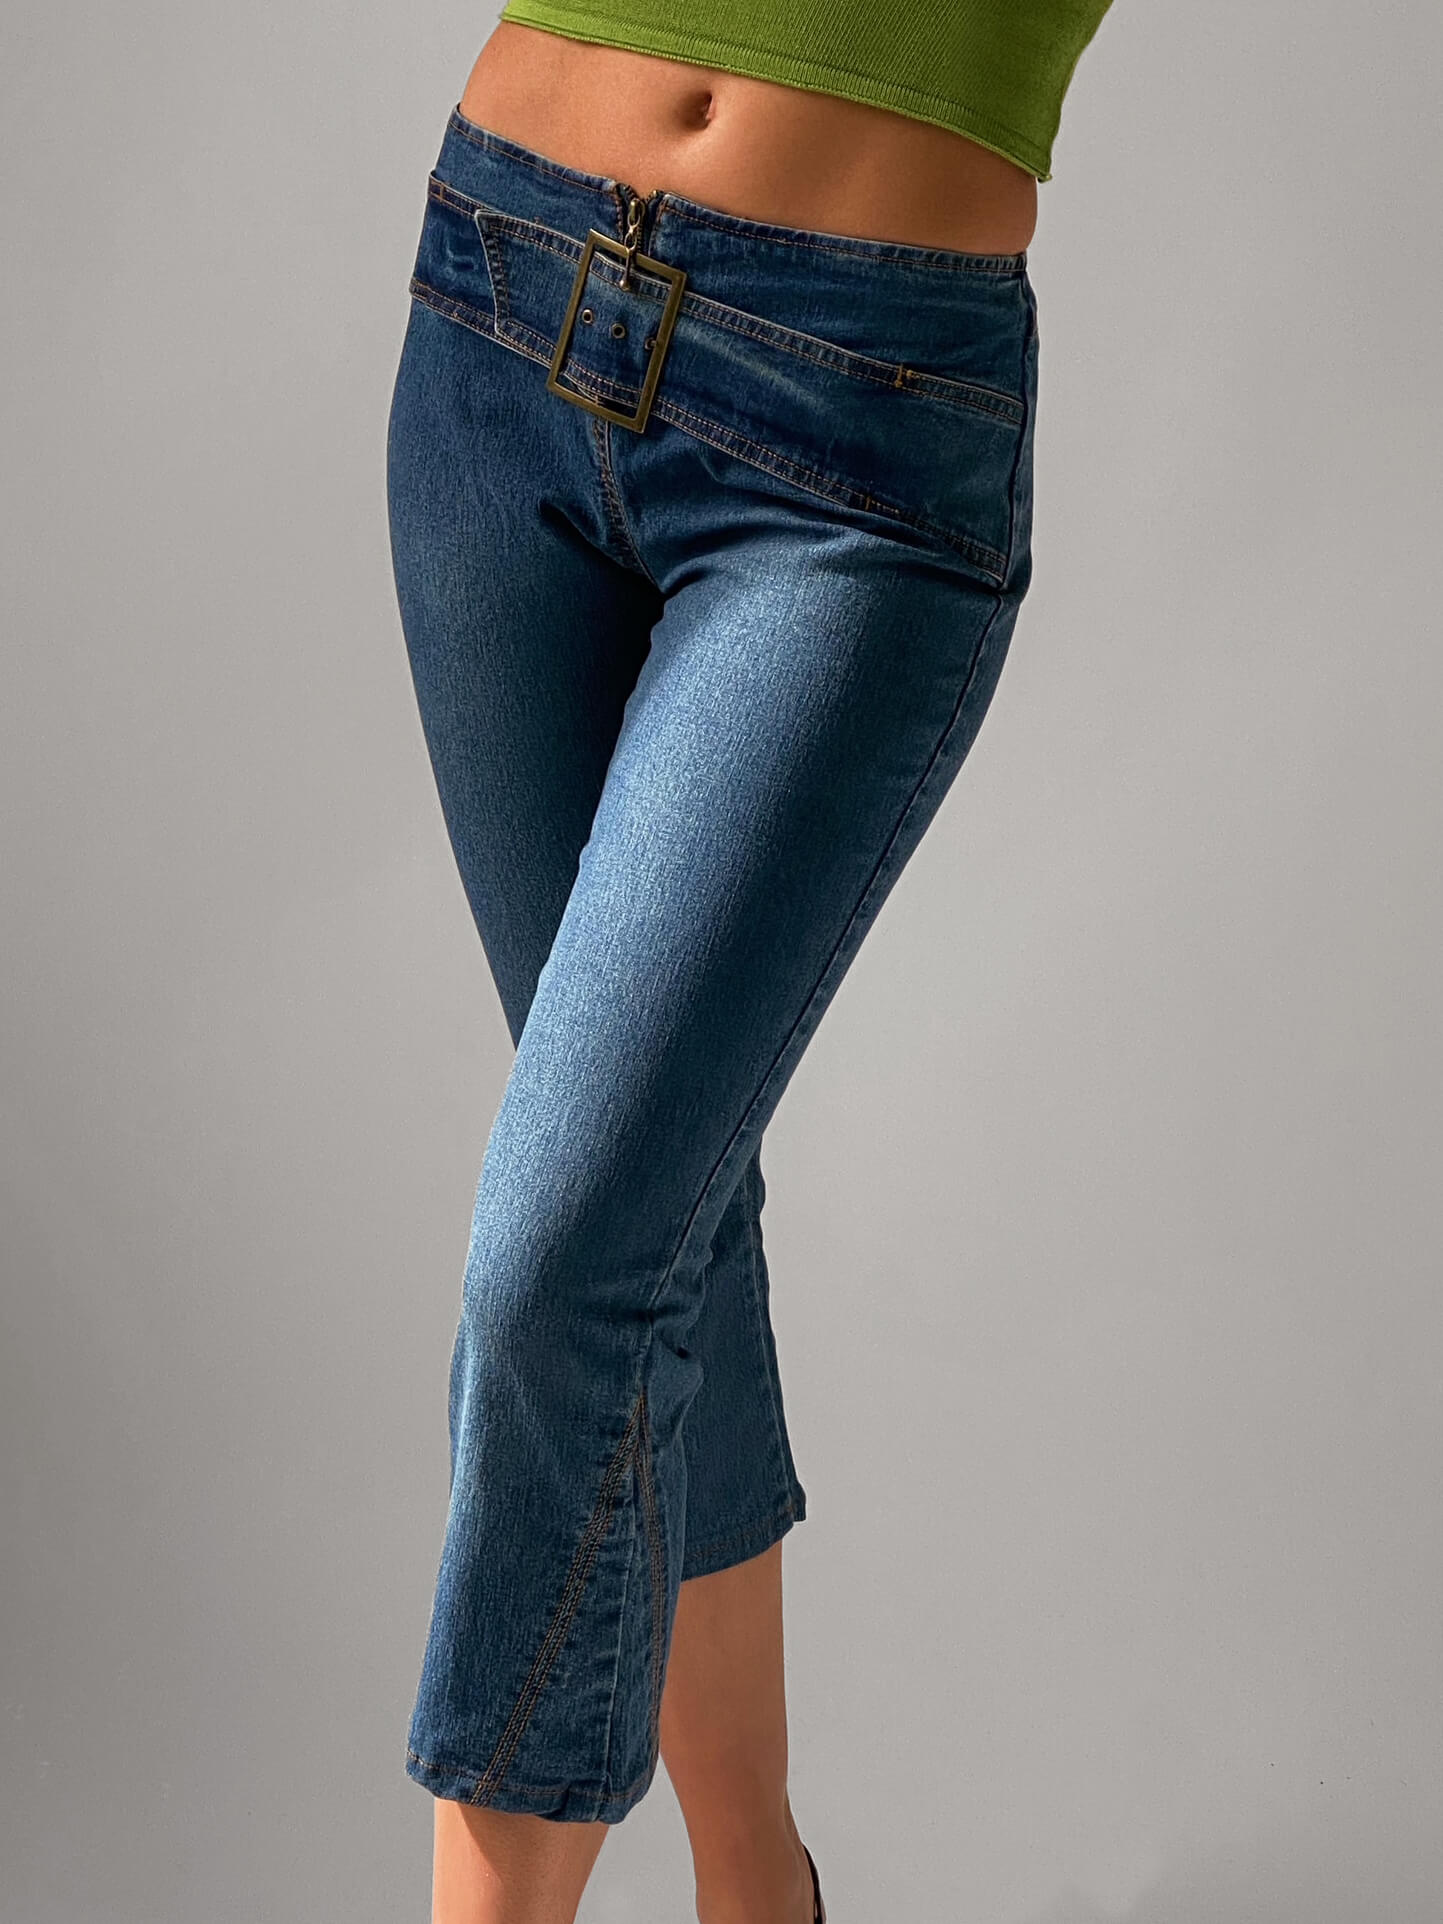 Vintage Belted Capri Jeans | S/5